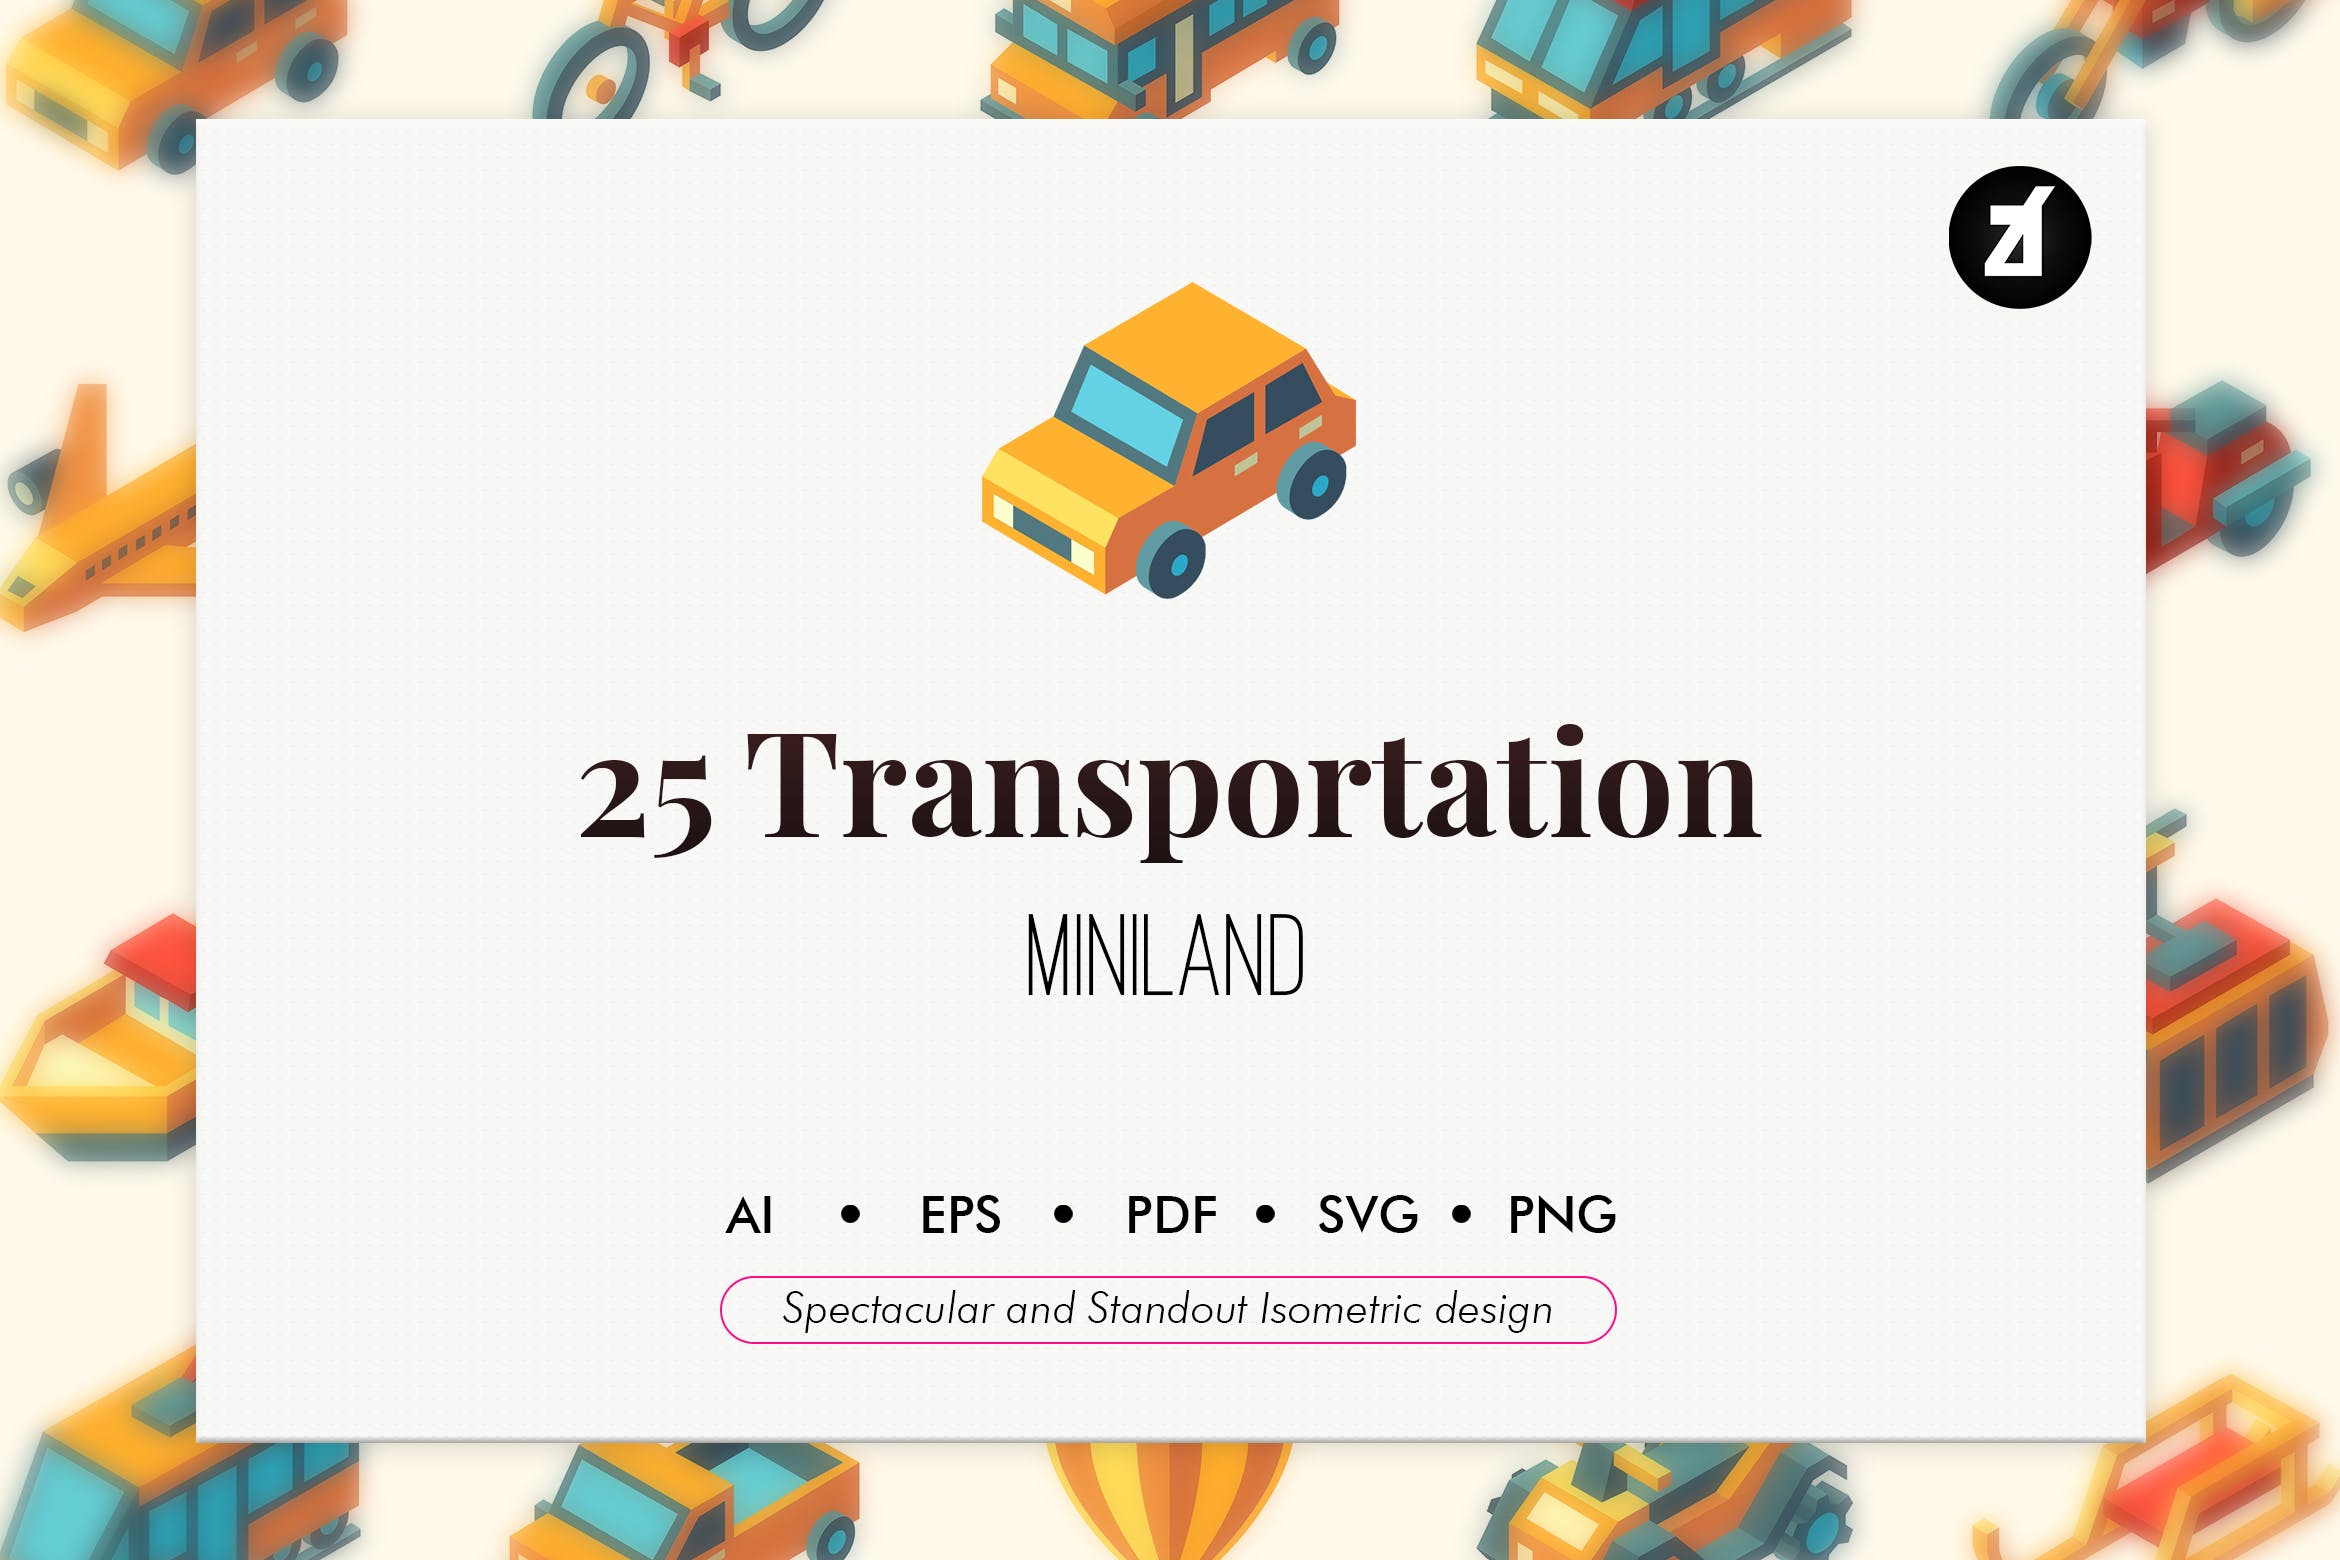 25枚交通运输工具矢量素材库精选图标素材 25 Transportation isometric elements插图